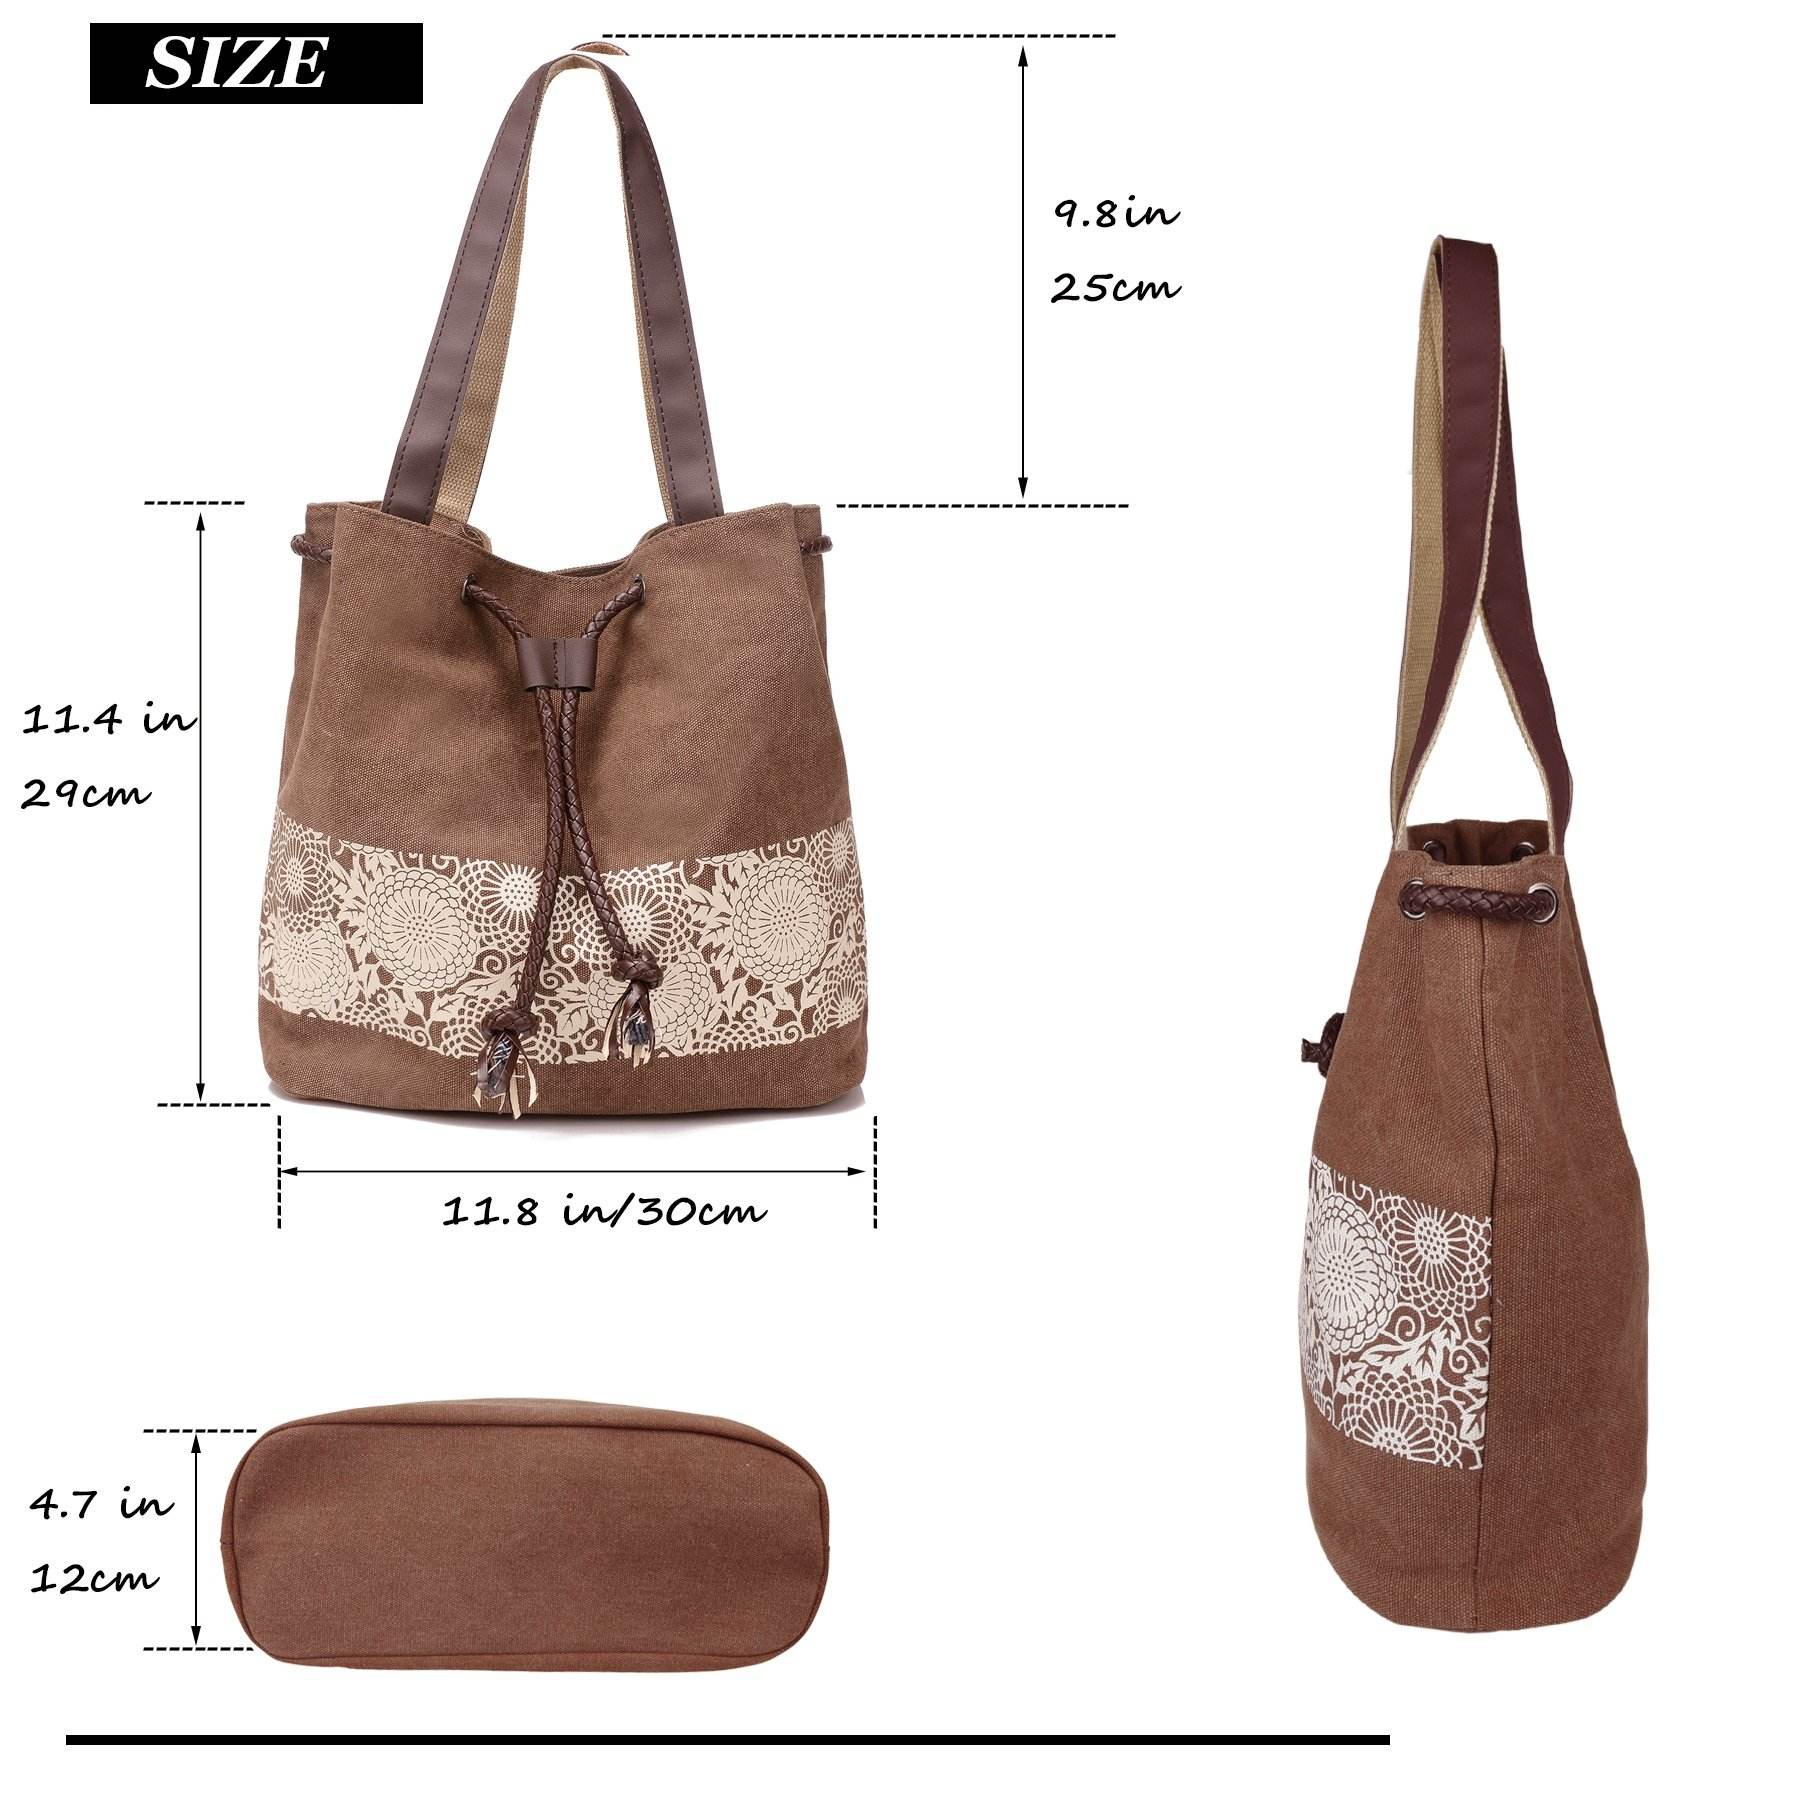 Amazon's Hot Sales Canvas Handbag Women Shoulder Strap Drawstring Bag With Printed Shopping Bag